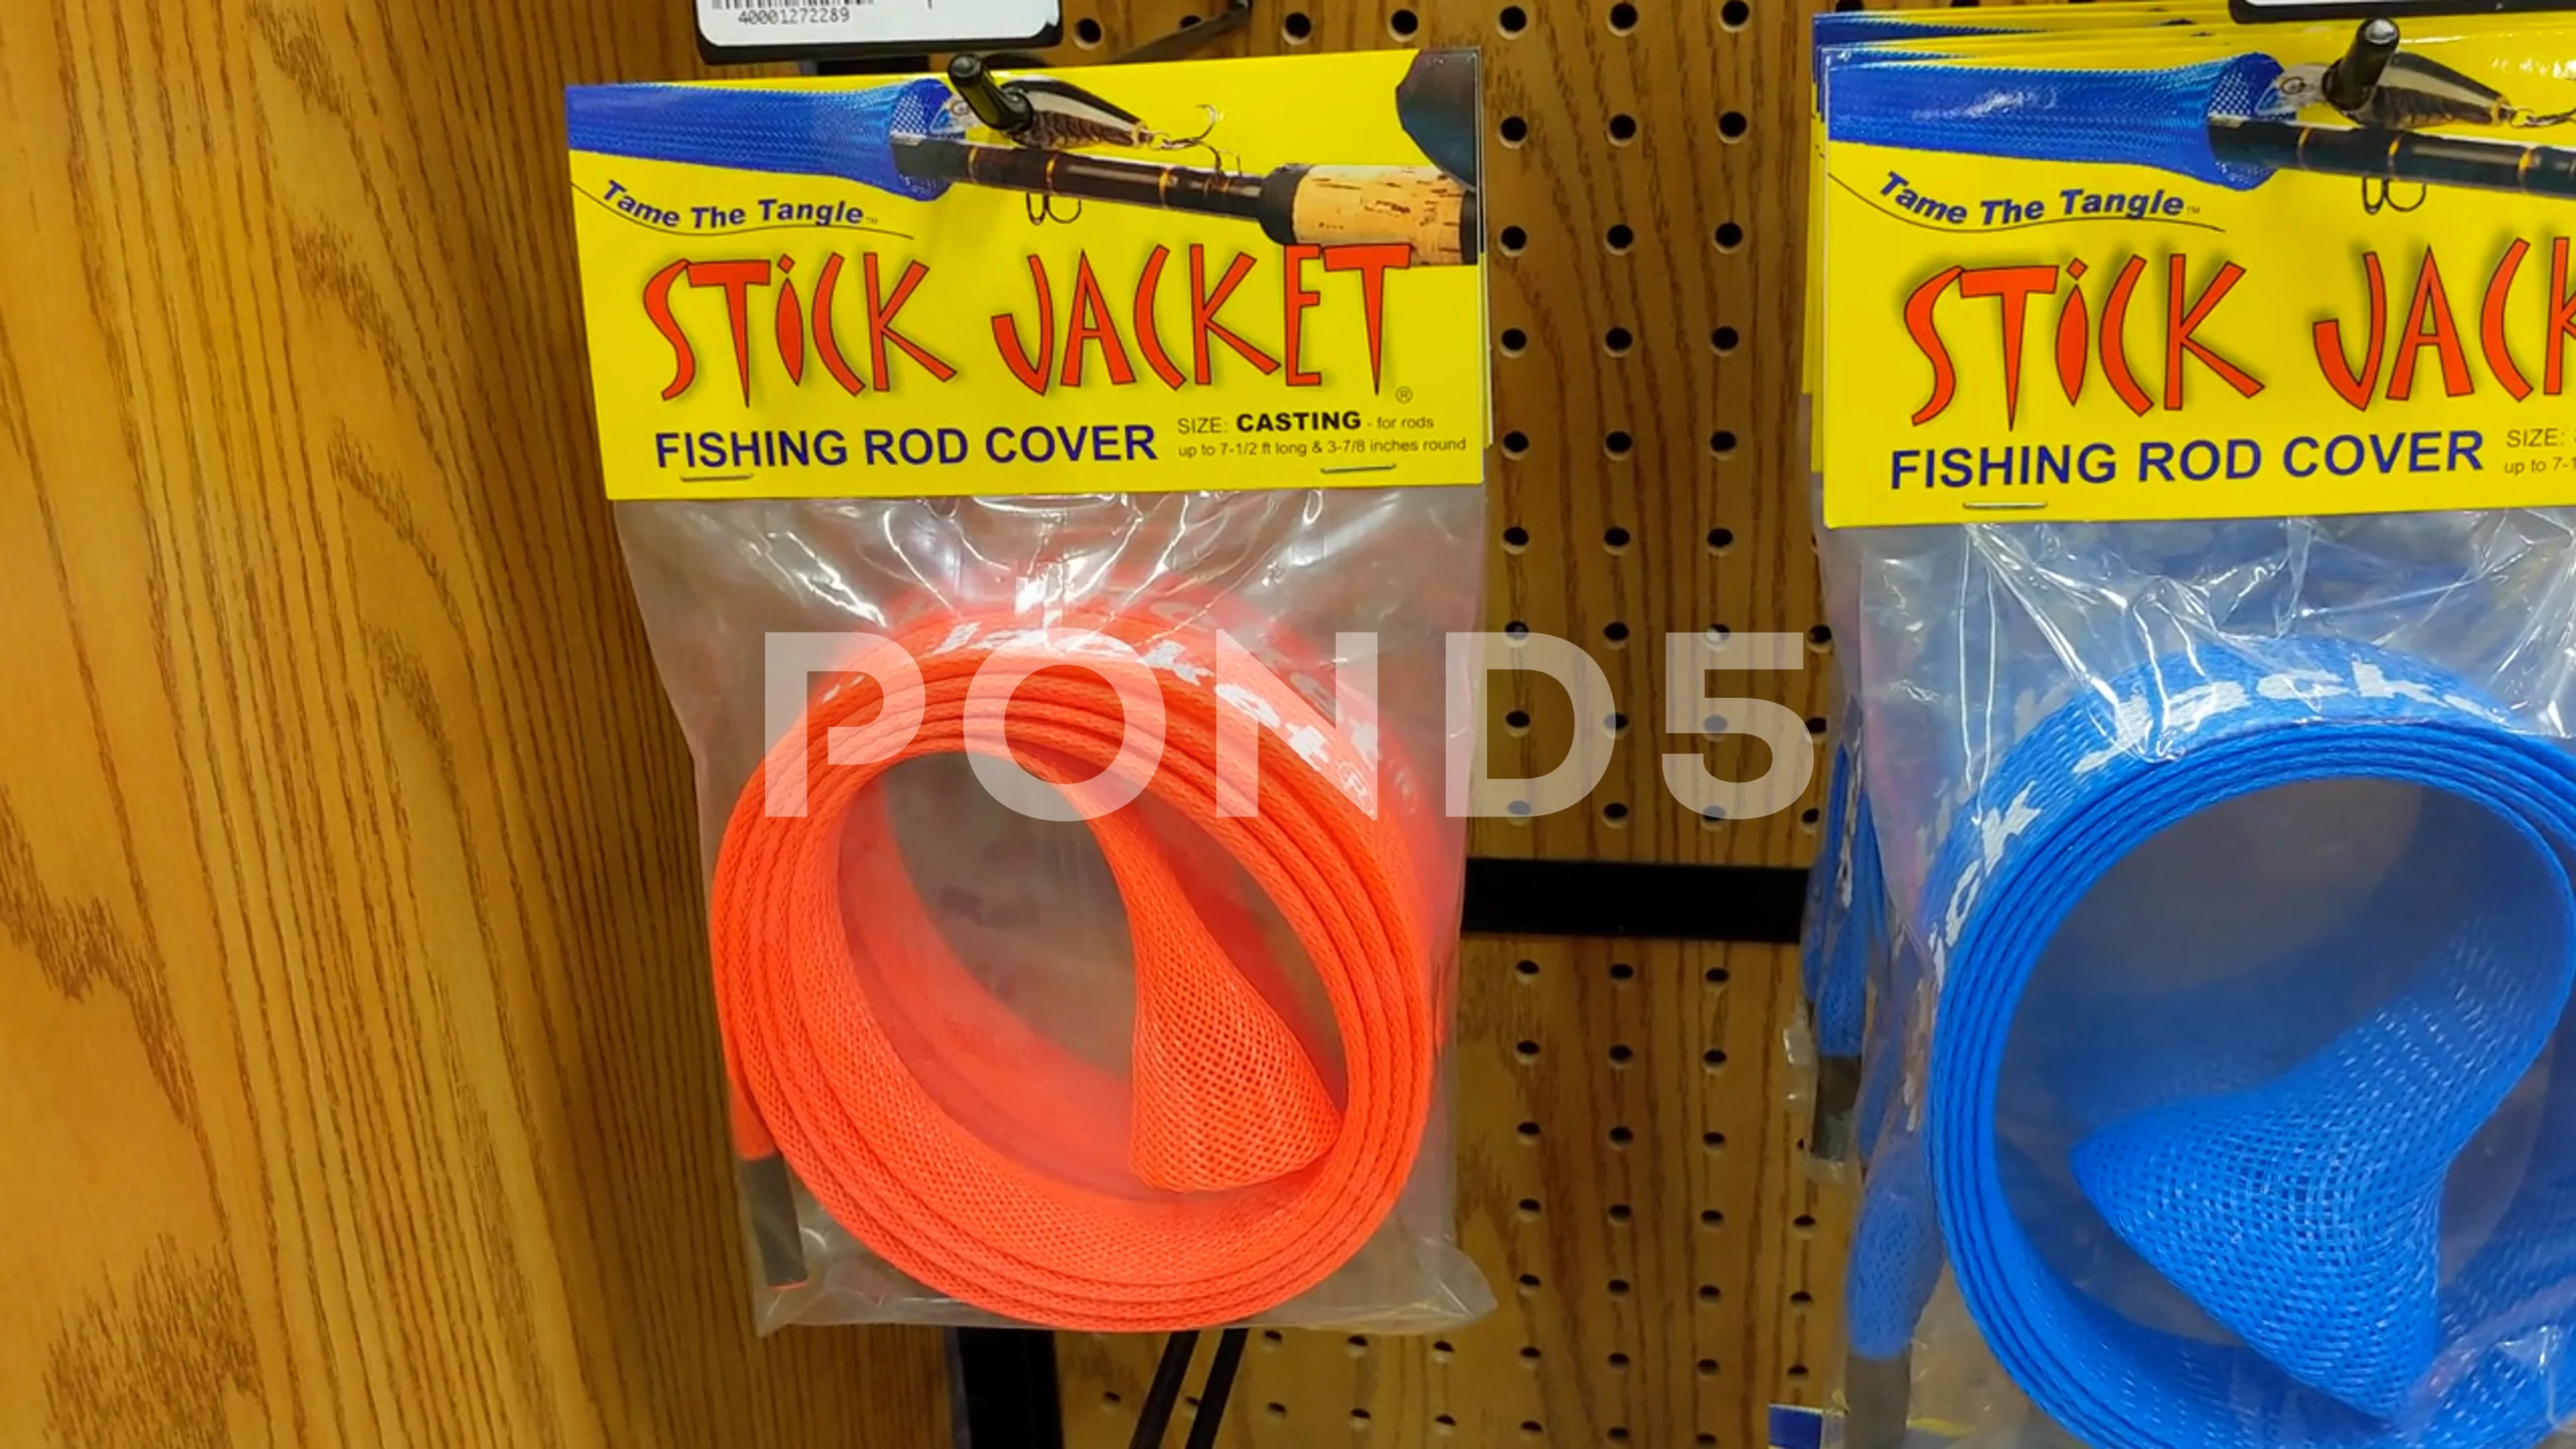 https://images.pond5.com/stick-jacket-fishing-rod-cover-footage-175950673_prevstill.jpeg